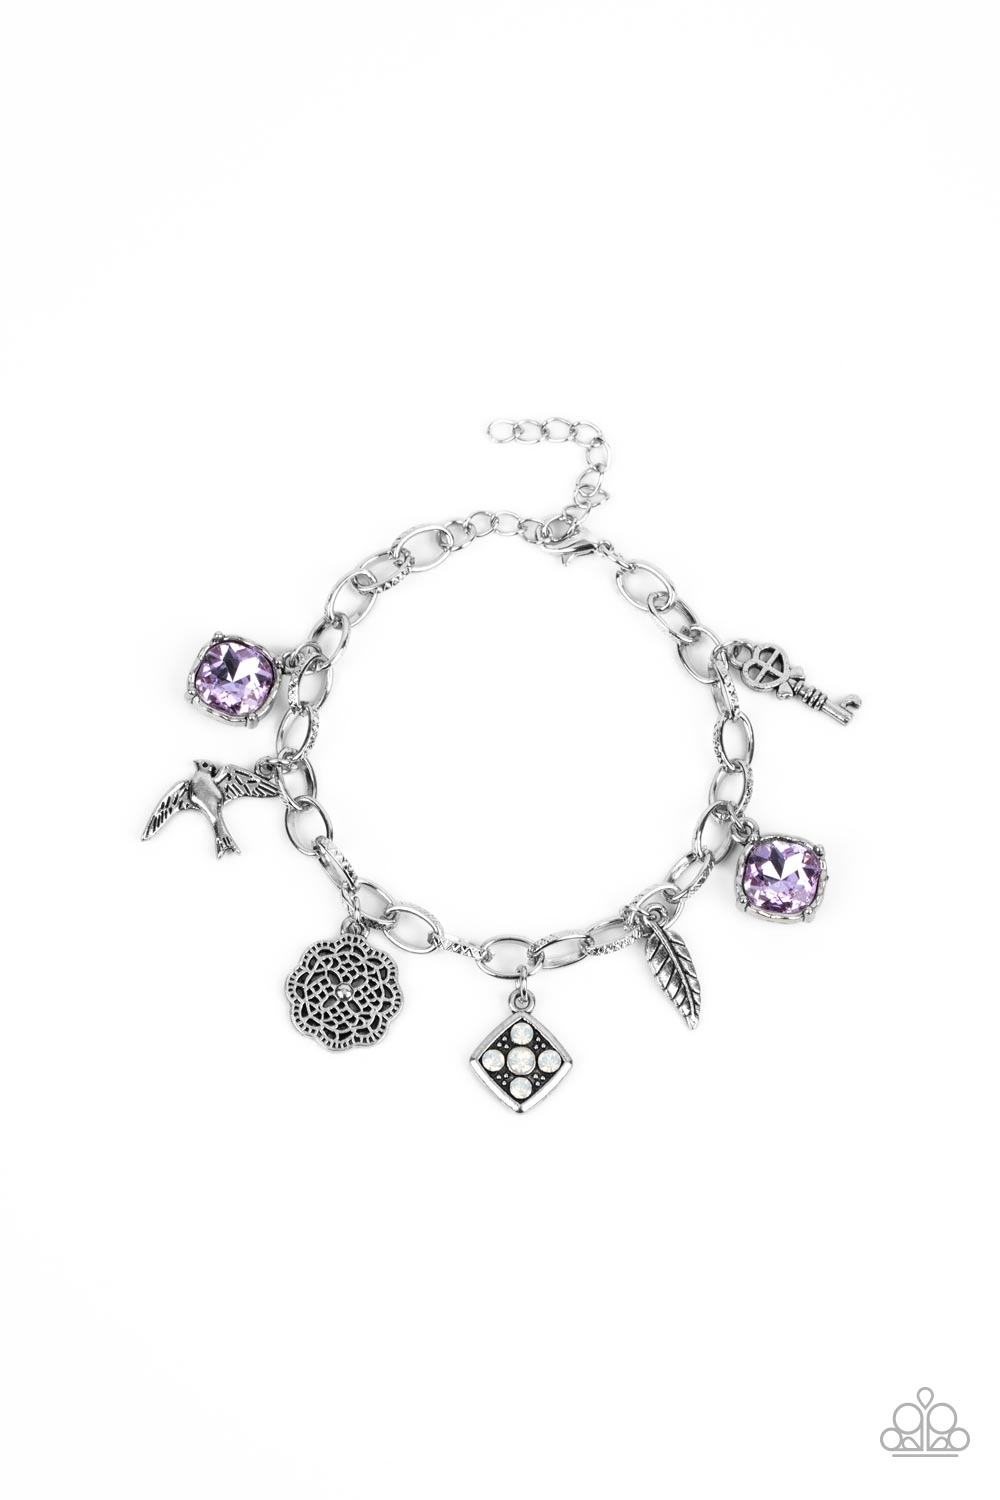 Fancifully Flighty - Purple bracelet 2165